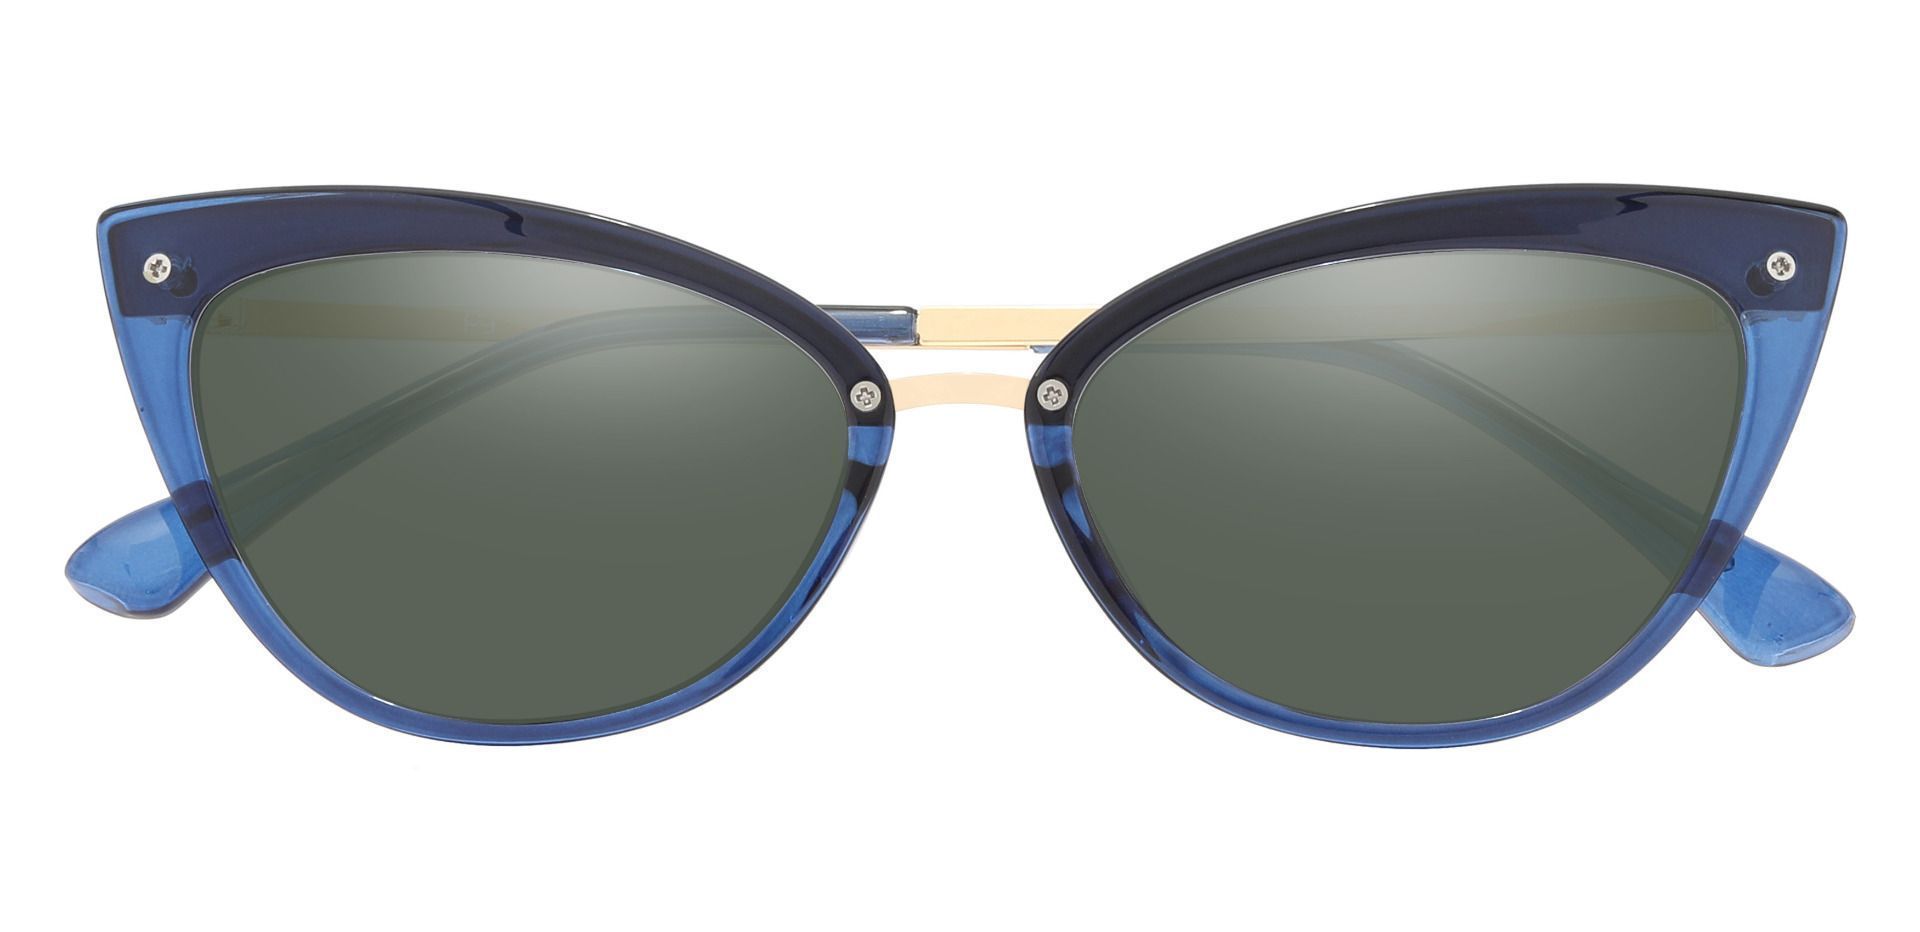 Glenda Cat Eye Prescription Sunglasses - Blue Frame With Green Lenses